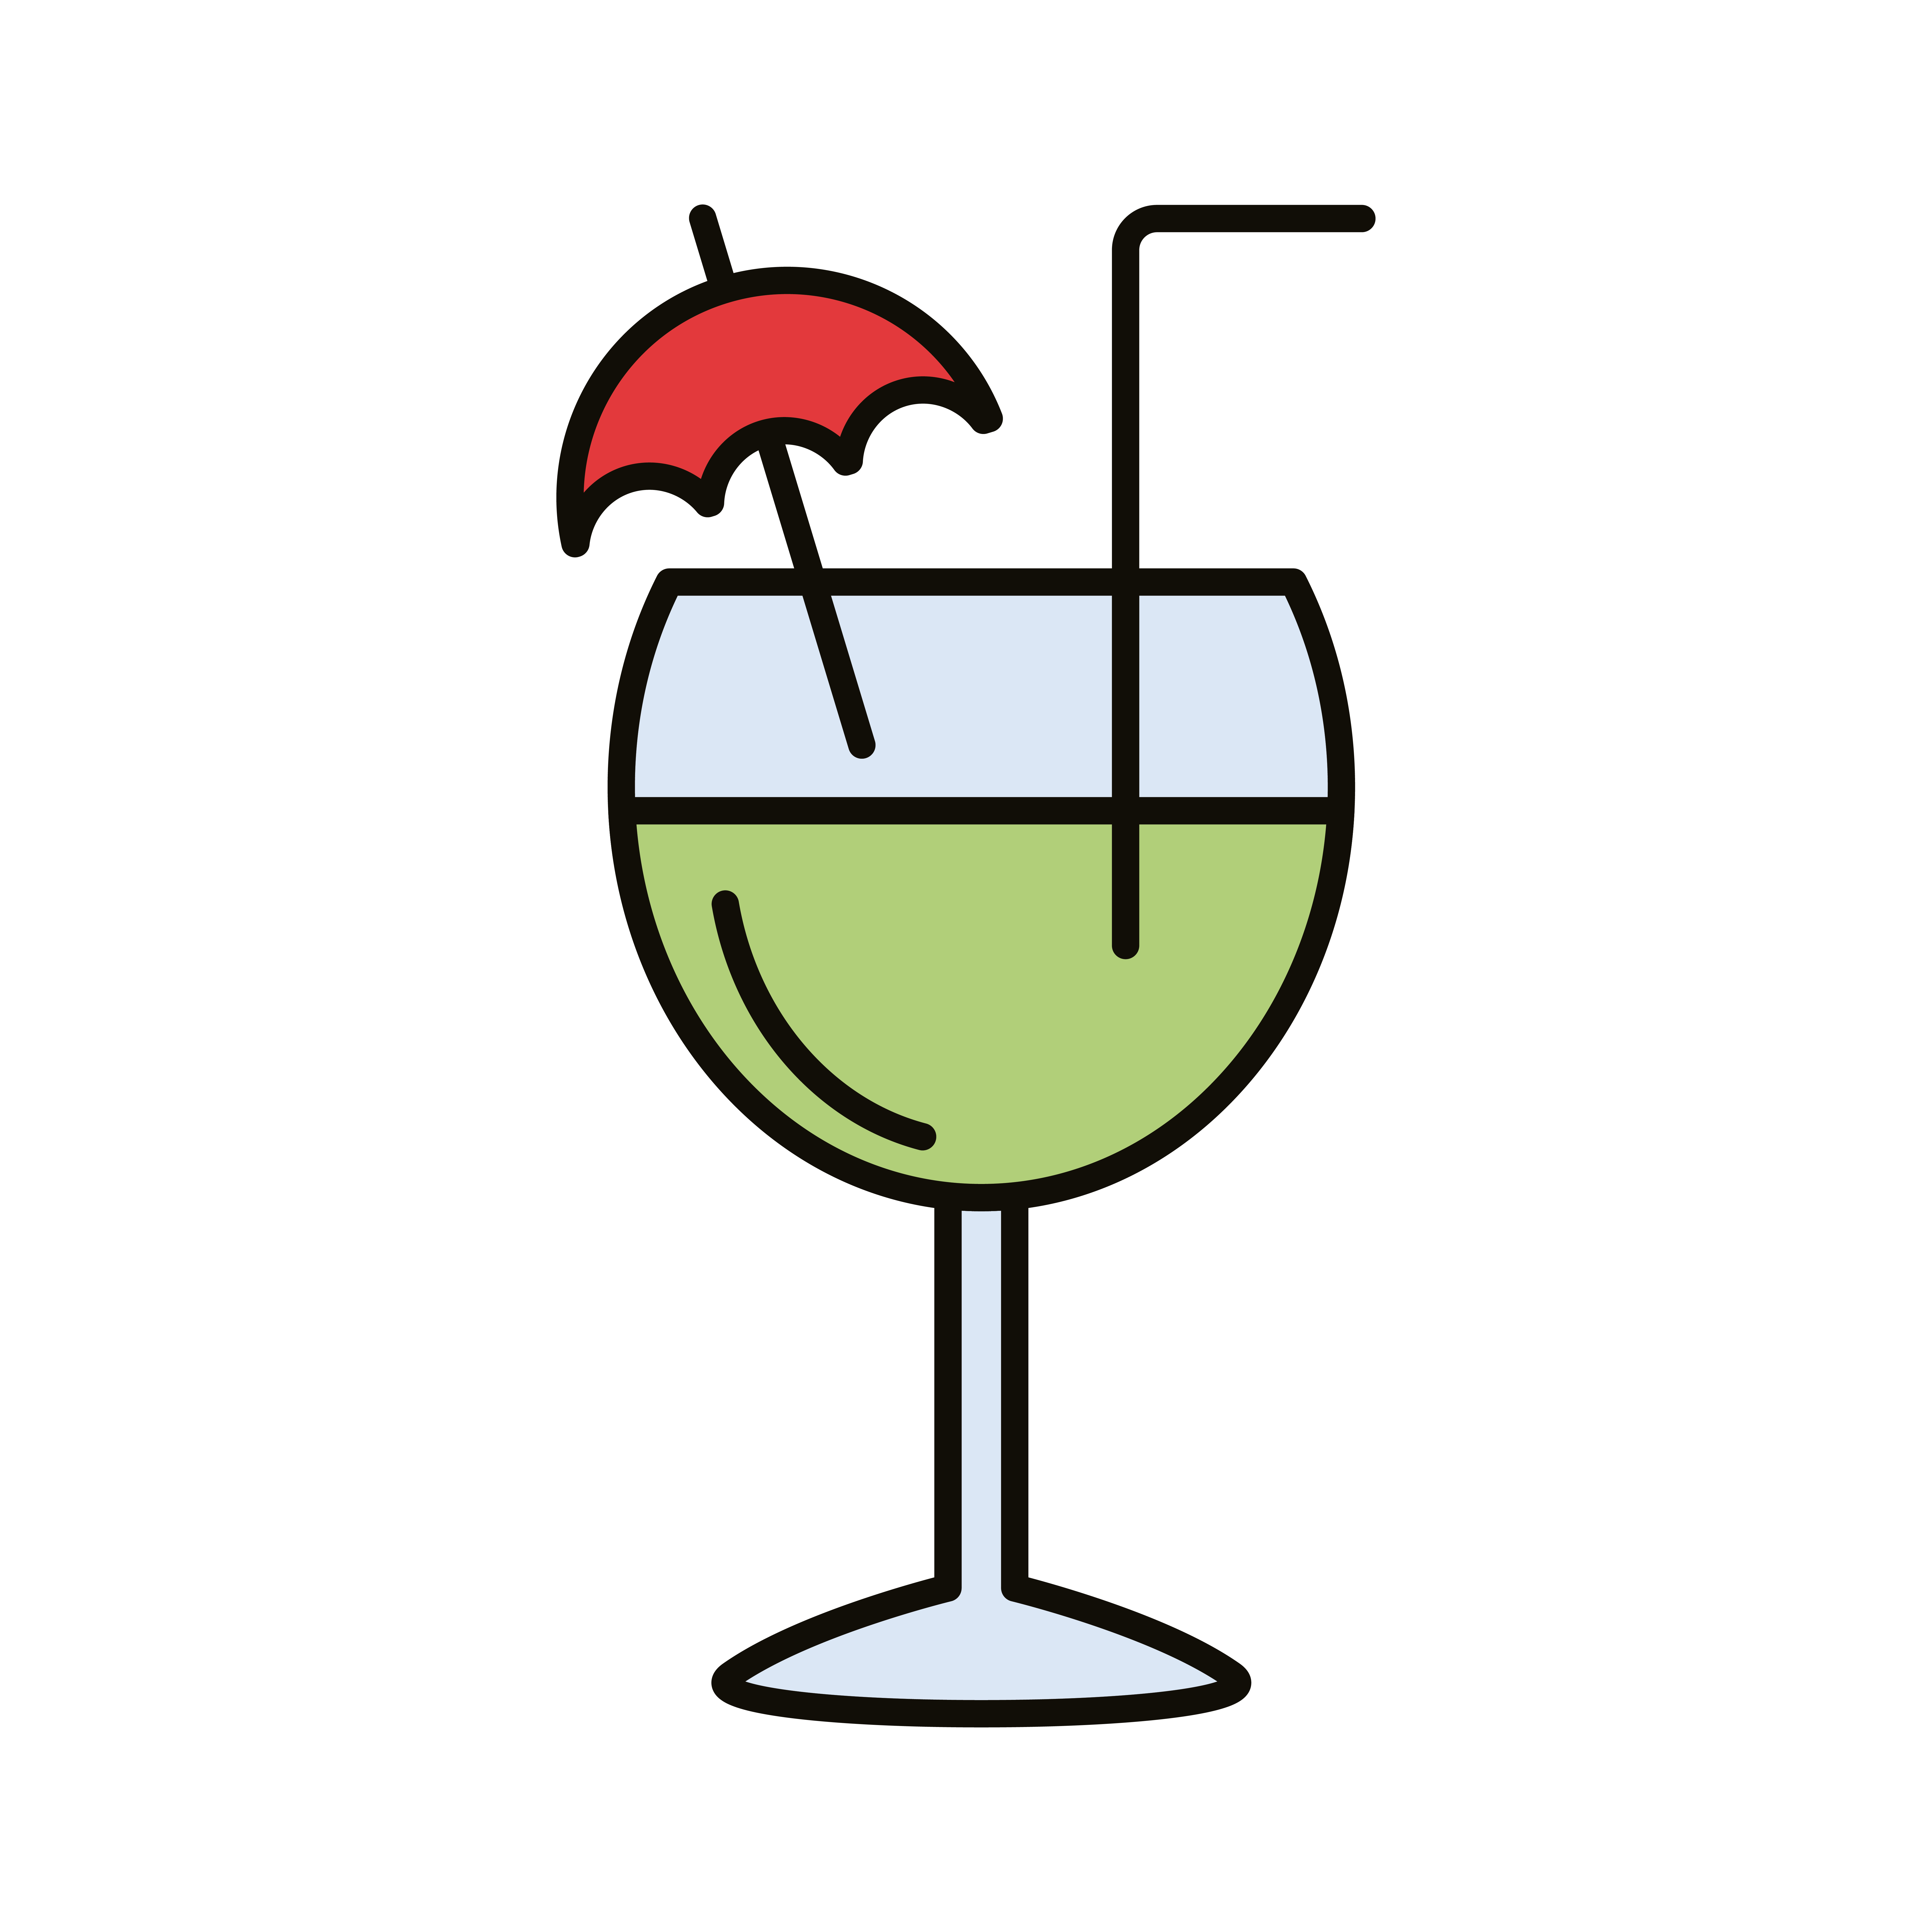 Copa de cóctel con sombrilla, bebida, línea de bebidas icono de relleno 2477498 Vector Vecteezy